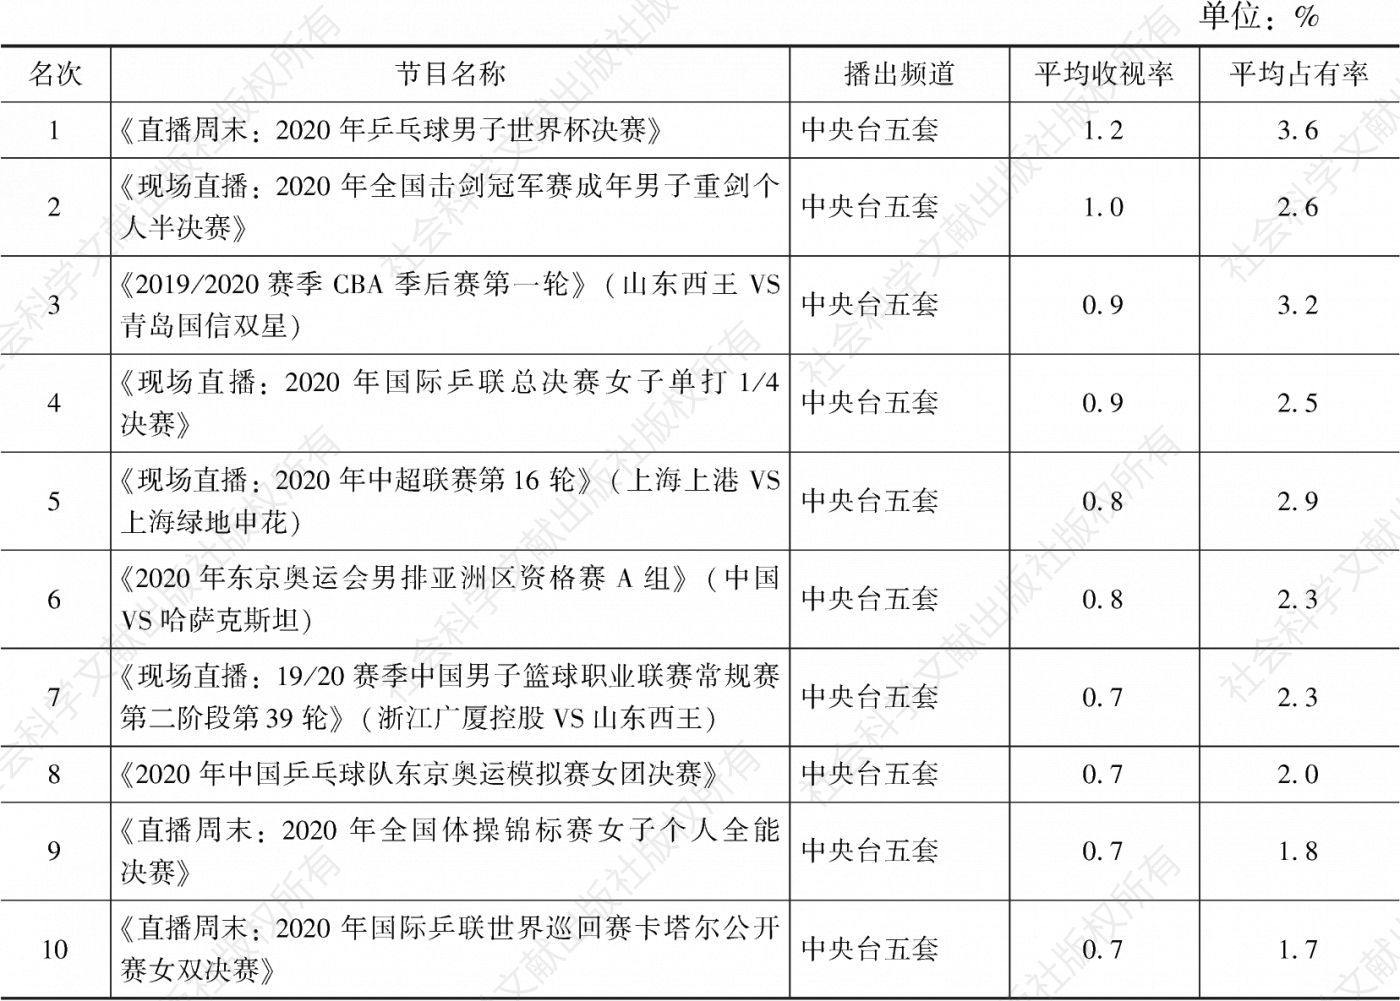 表3.18.12 2020年内蒙古市场体育节目收视率排名前10